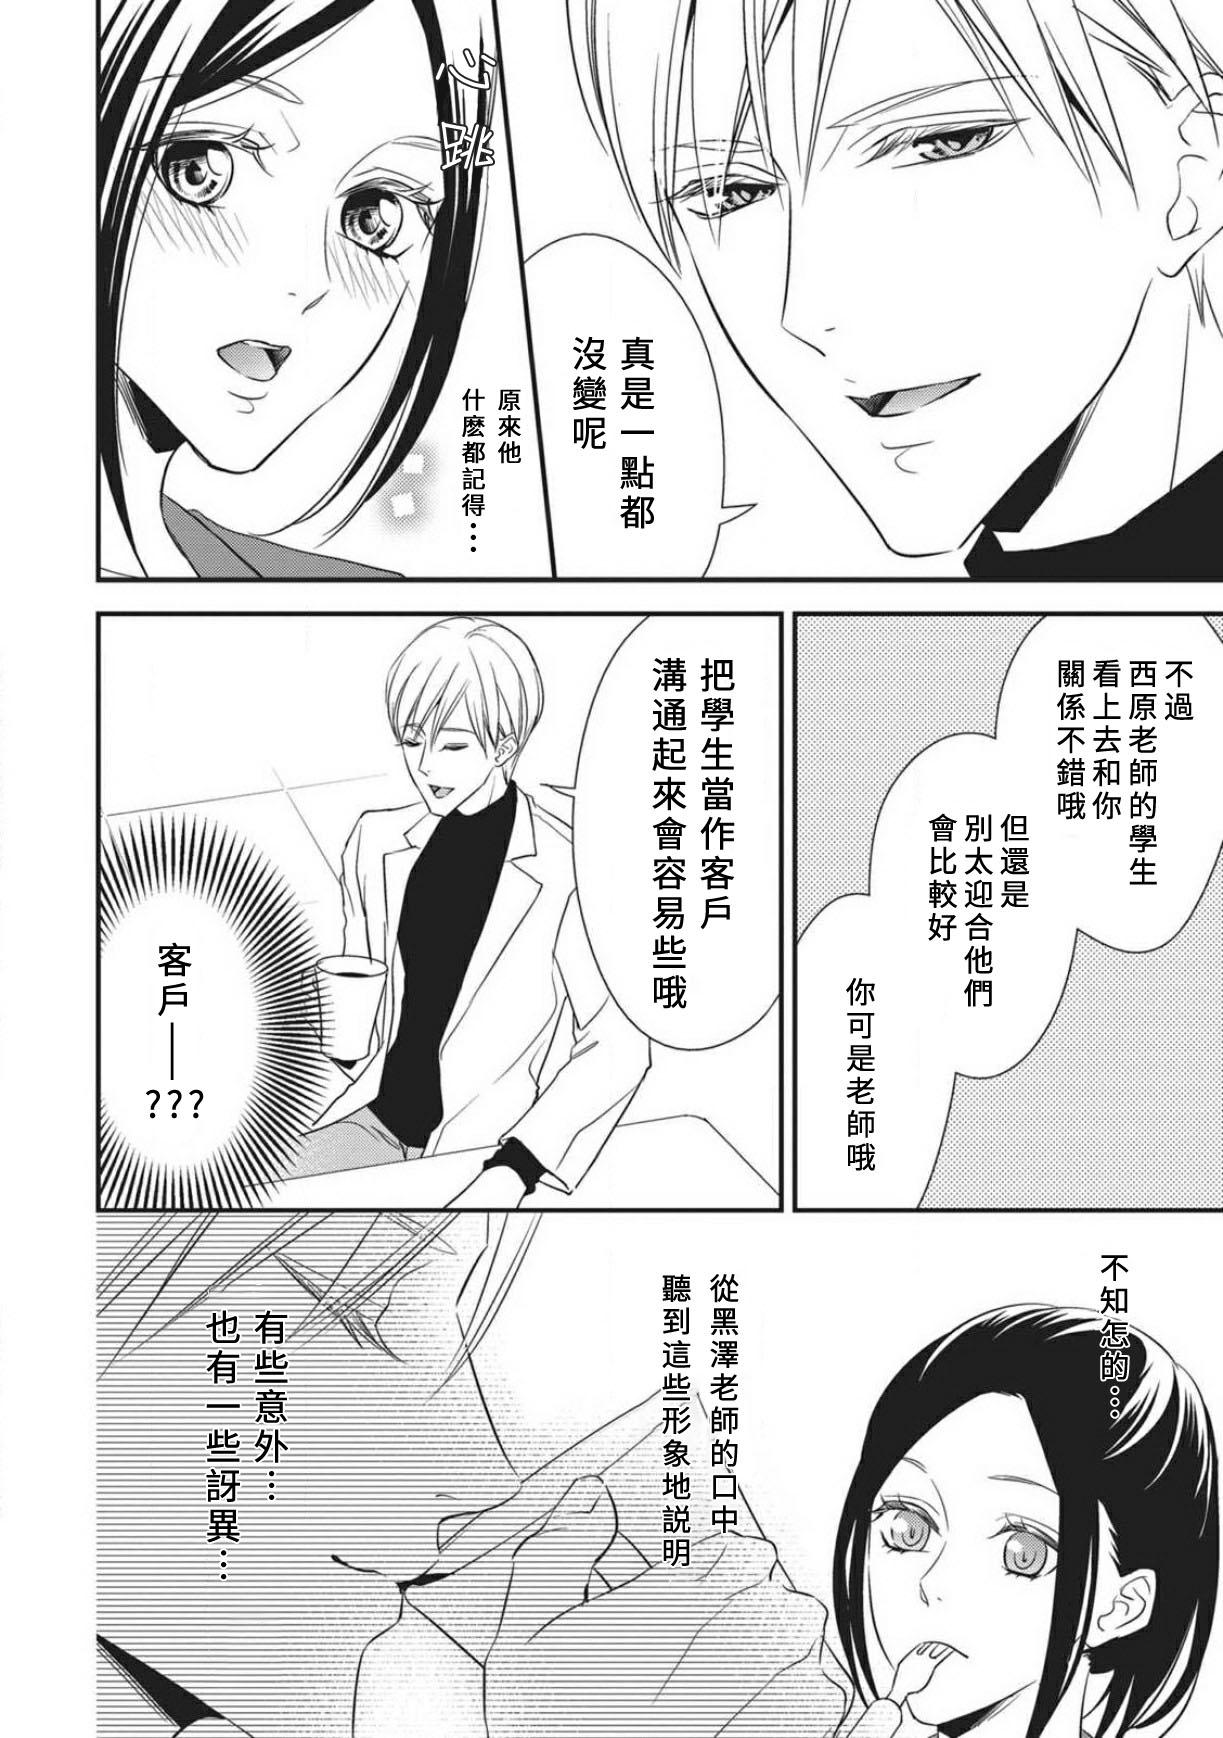 Chaturbate Watashi no hoken no sensei | 我的保健老师 Mediumtits - Page 10